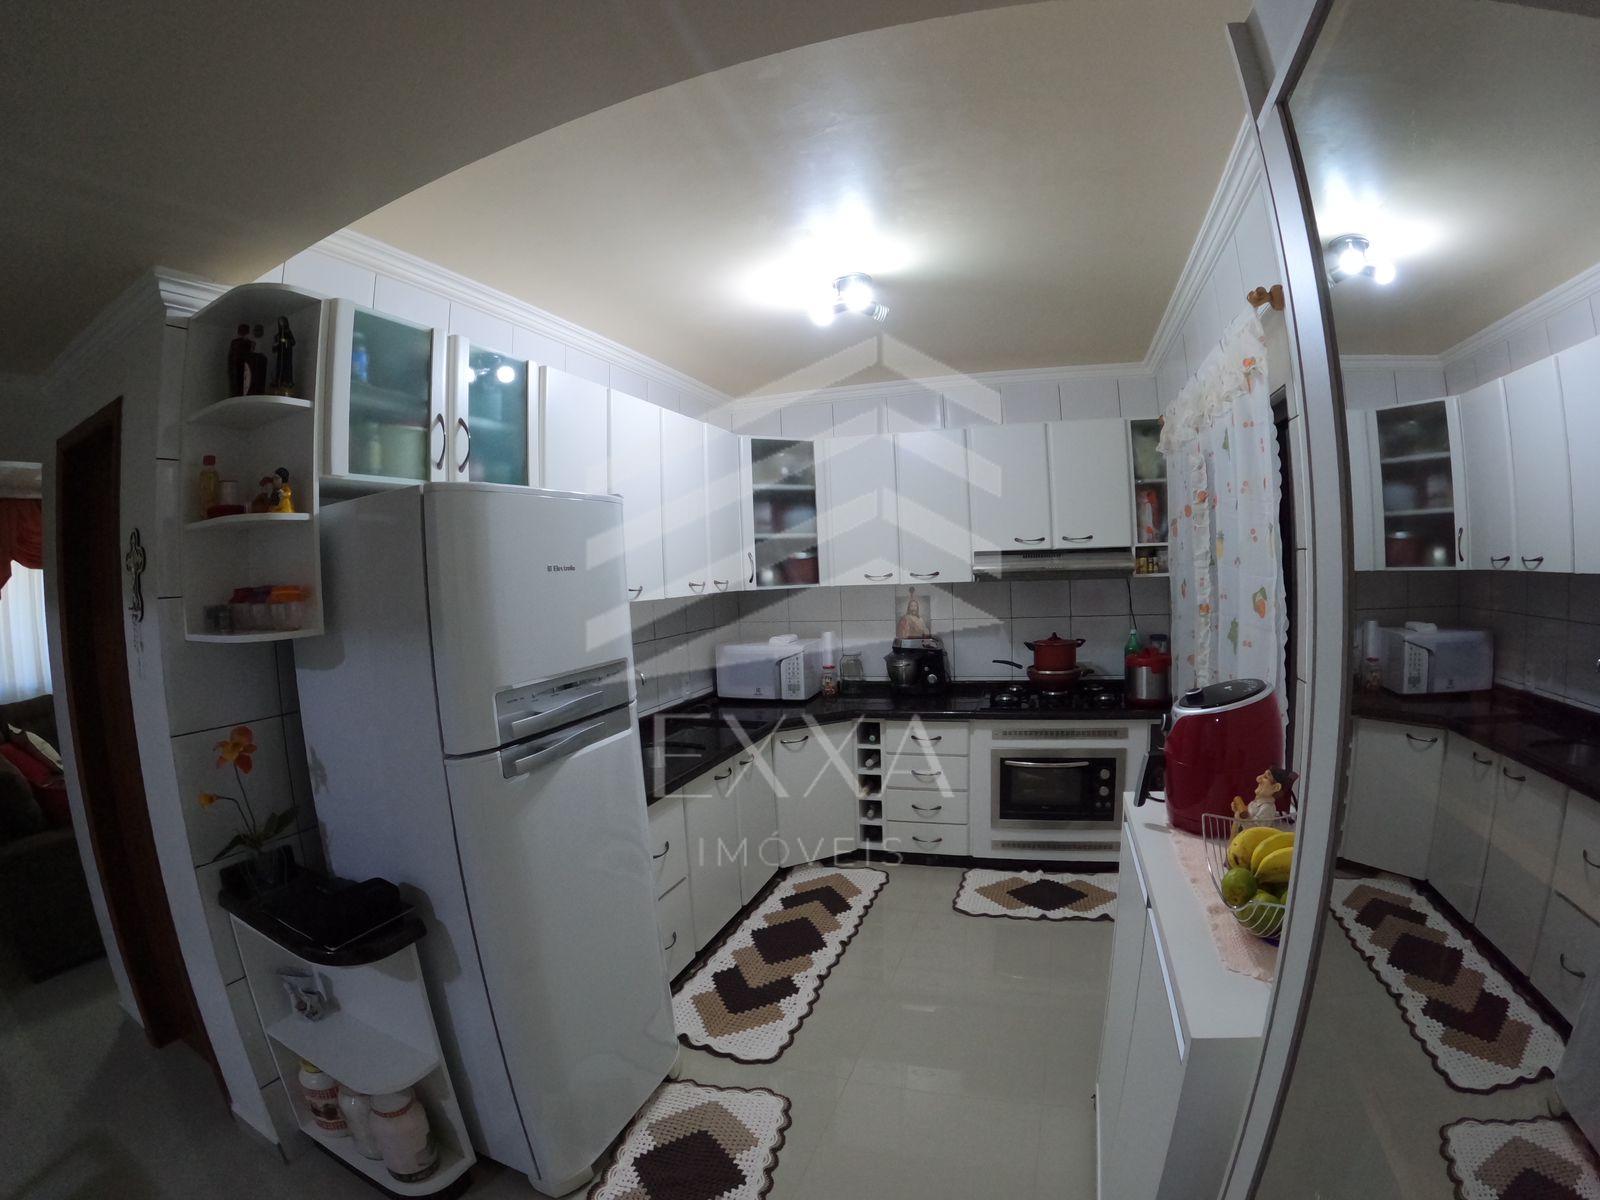 Sobrado Com 03 Dormitórios, Por R 980.000,00 Vila Tolentino, Cascavel-Pr.